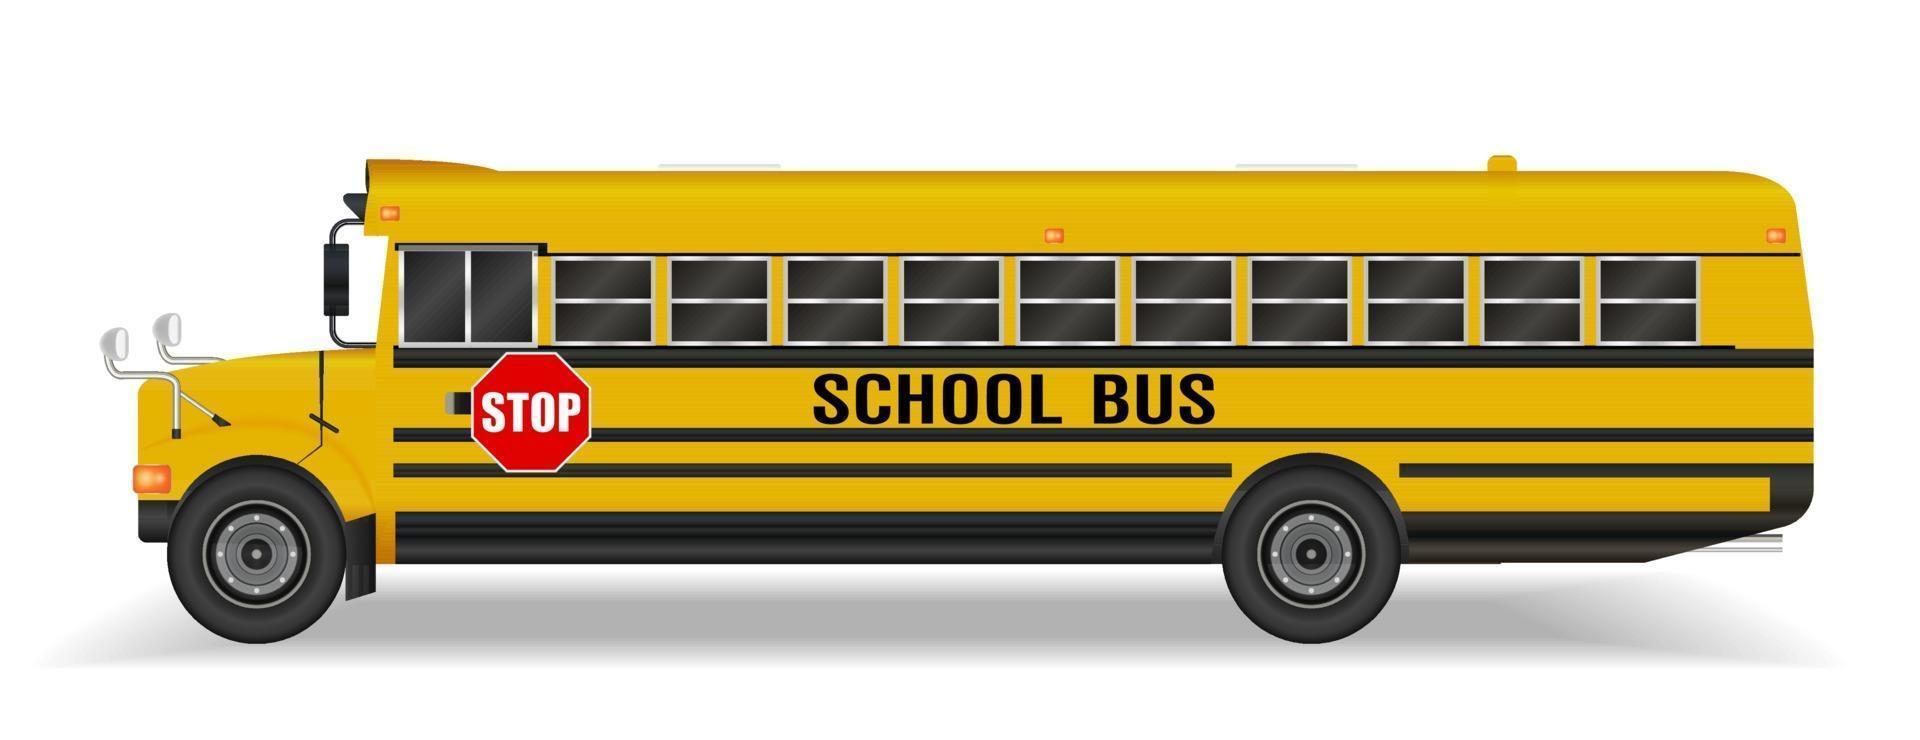 vrai bus scolaire sur fond blanc vecteur